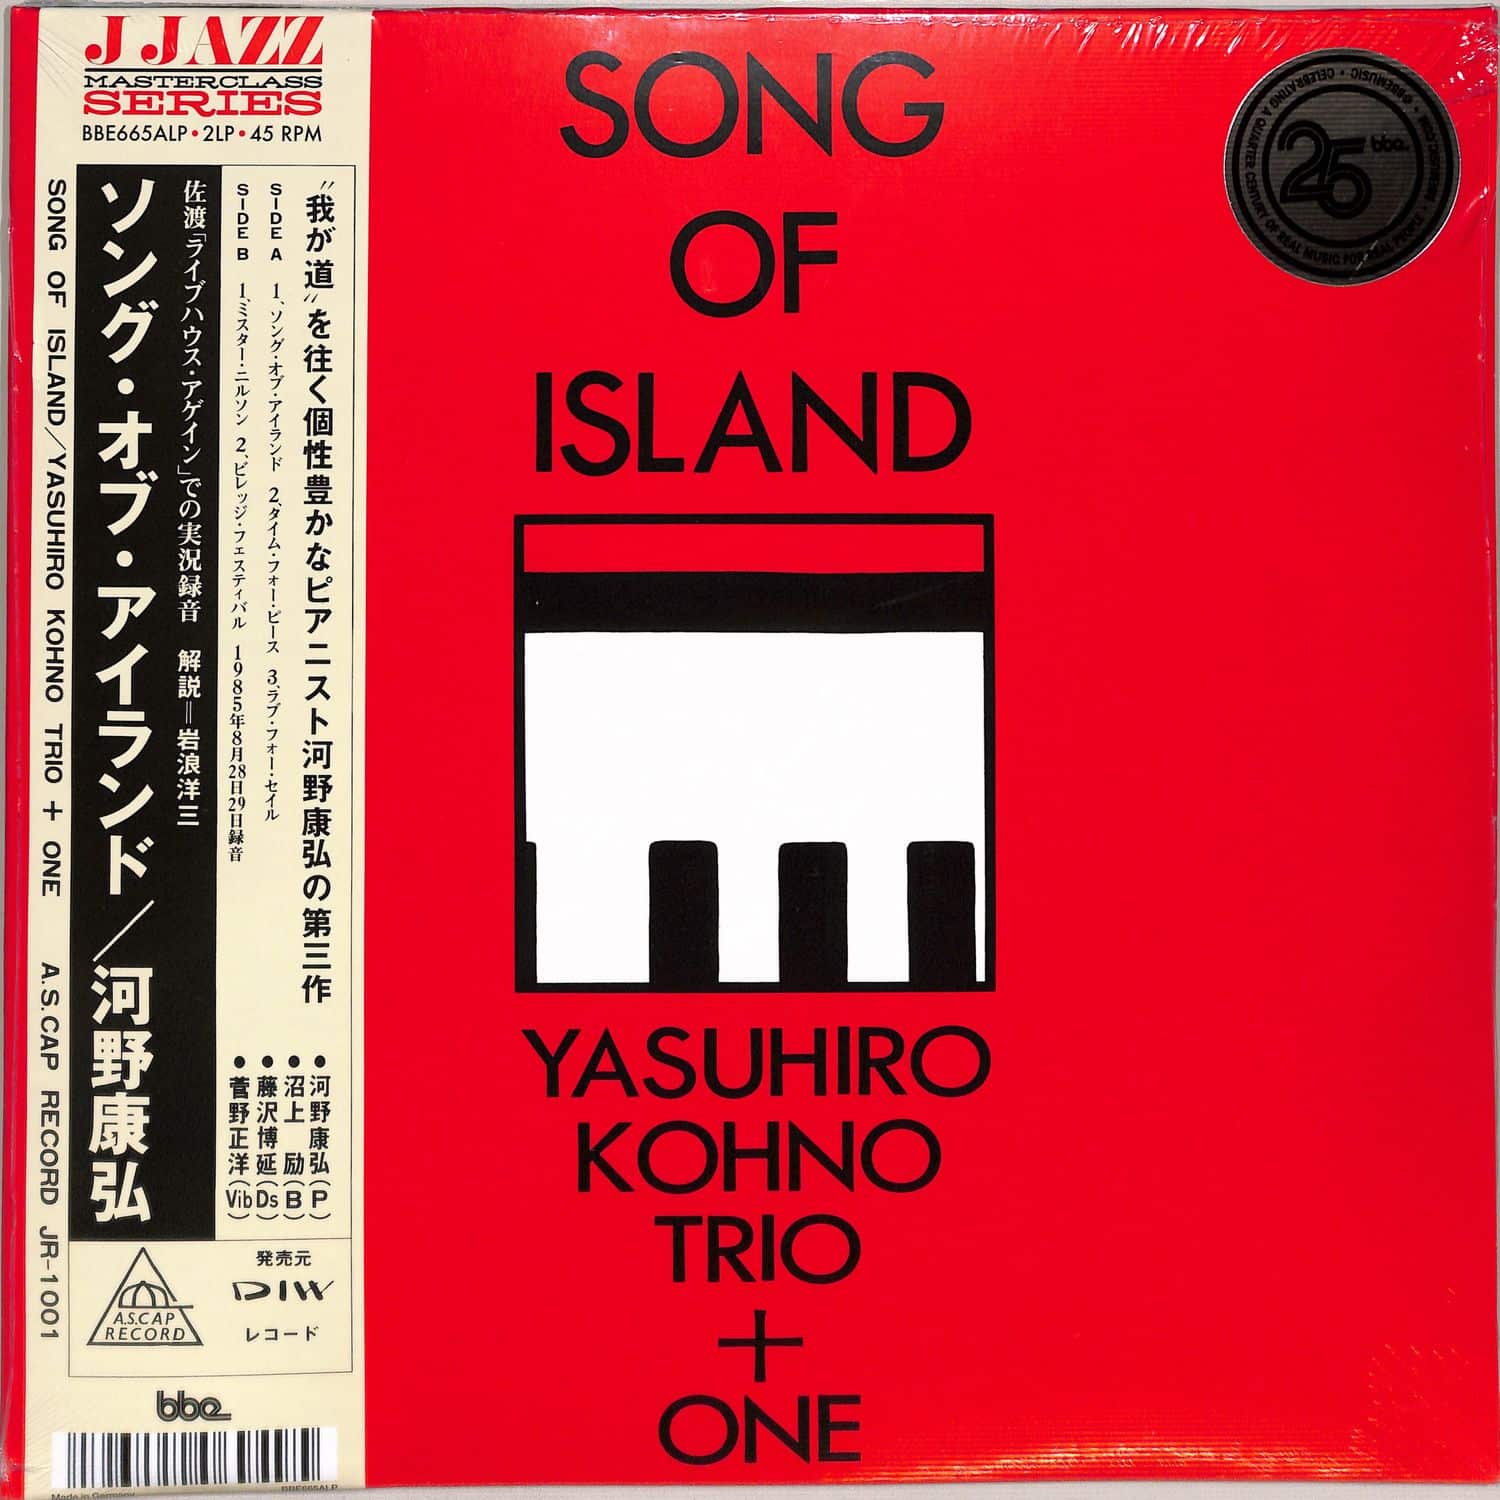 Yasuhiro Kohno - SONG OF ISLAND 